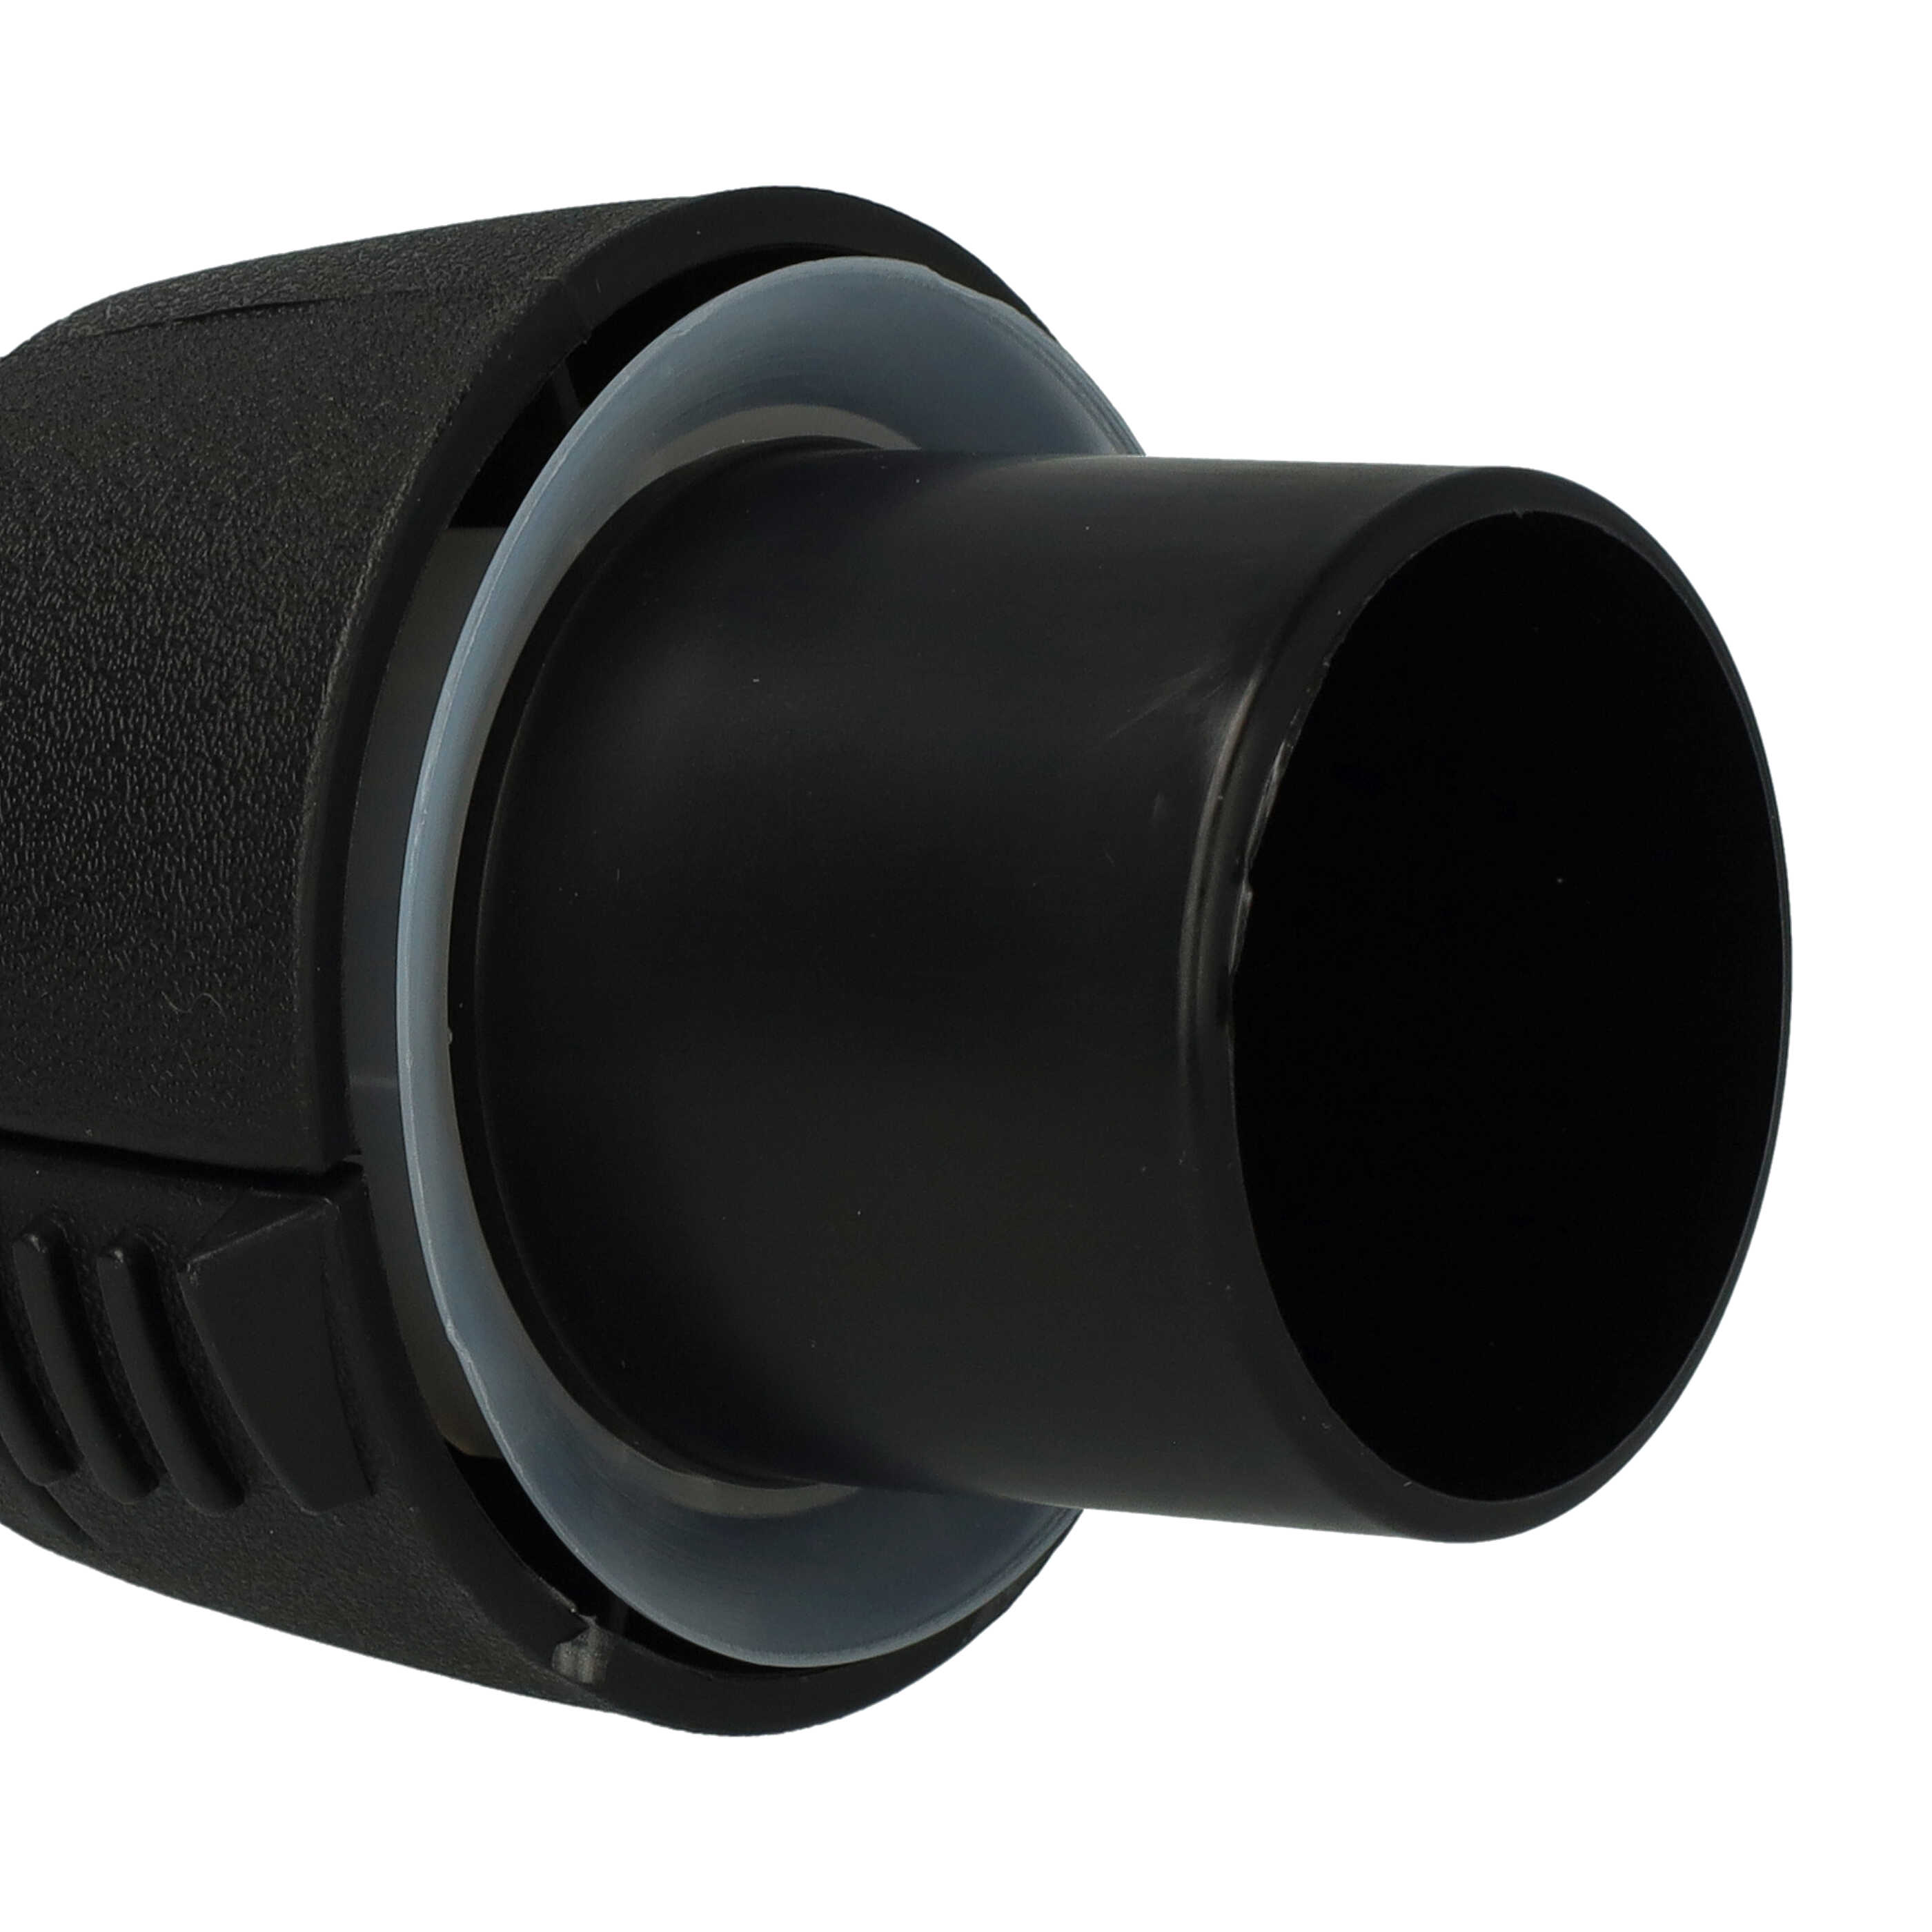 Adattatore per tubo flessibile per W6035 Wertheim aspiratori ecc - sistema a clic